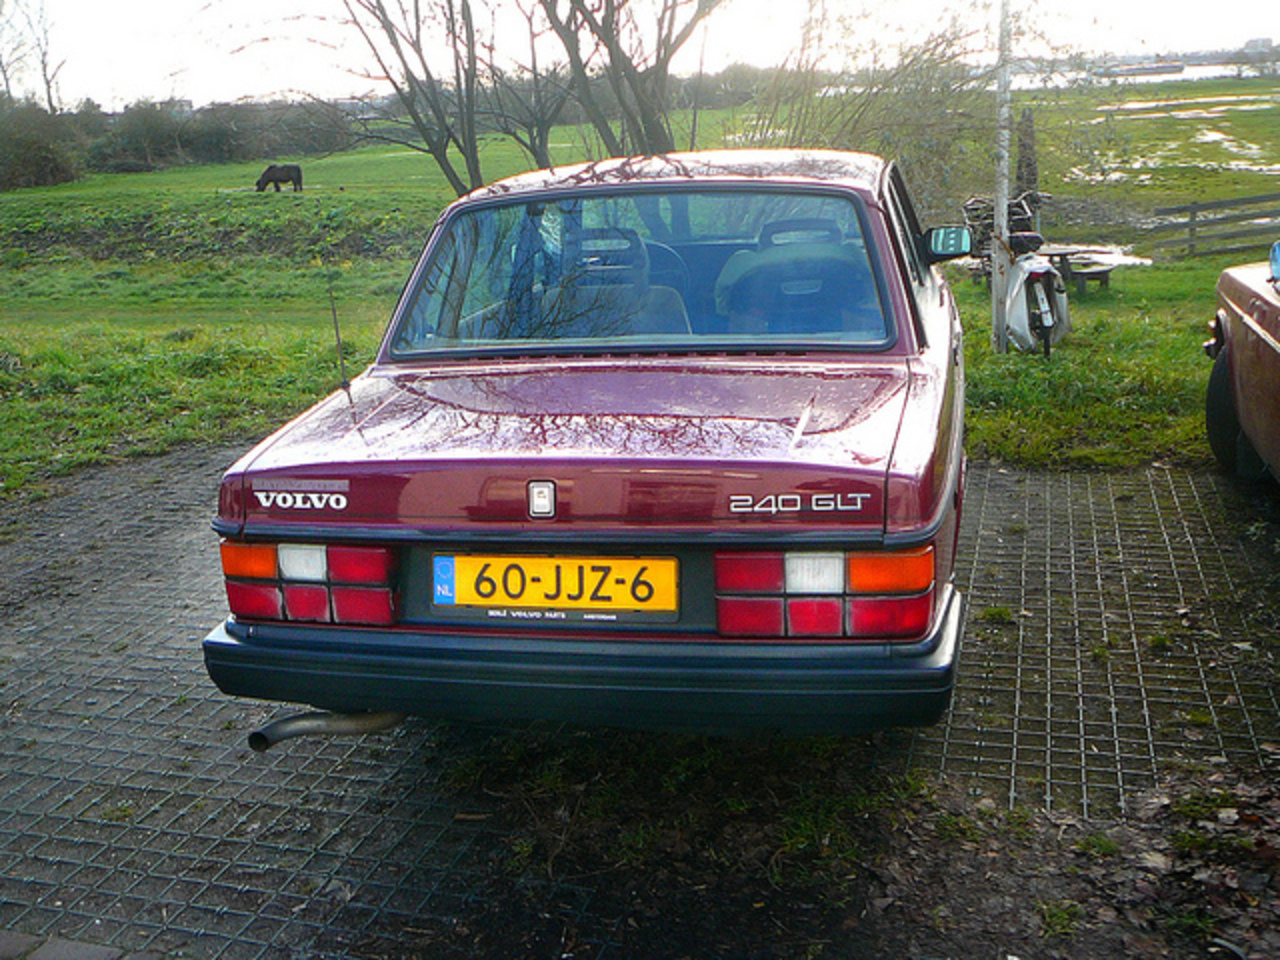 Volvo 240 GLT, 1987, Amsterdam, Nieuwendammerdijk, 12-2011...